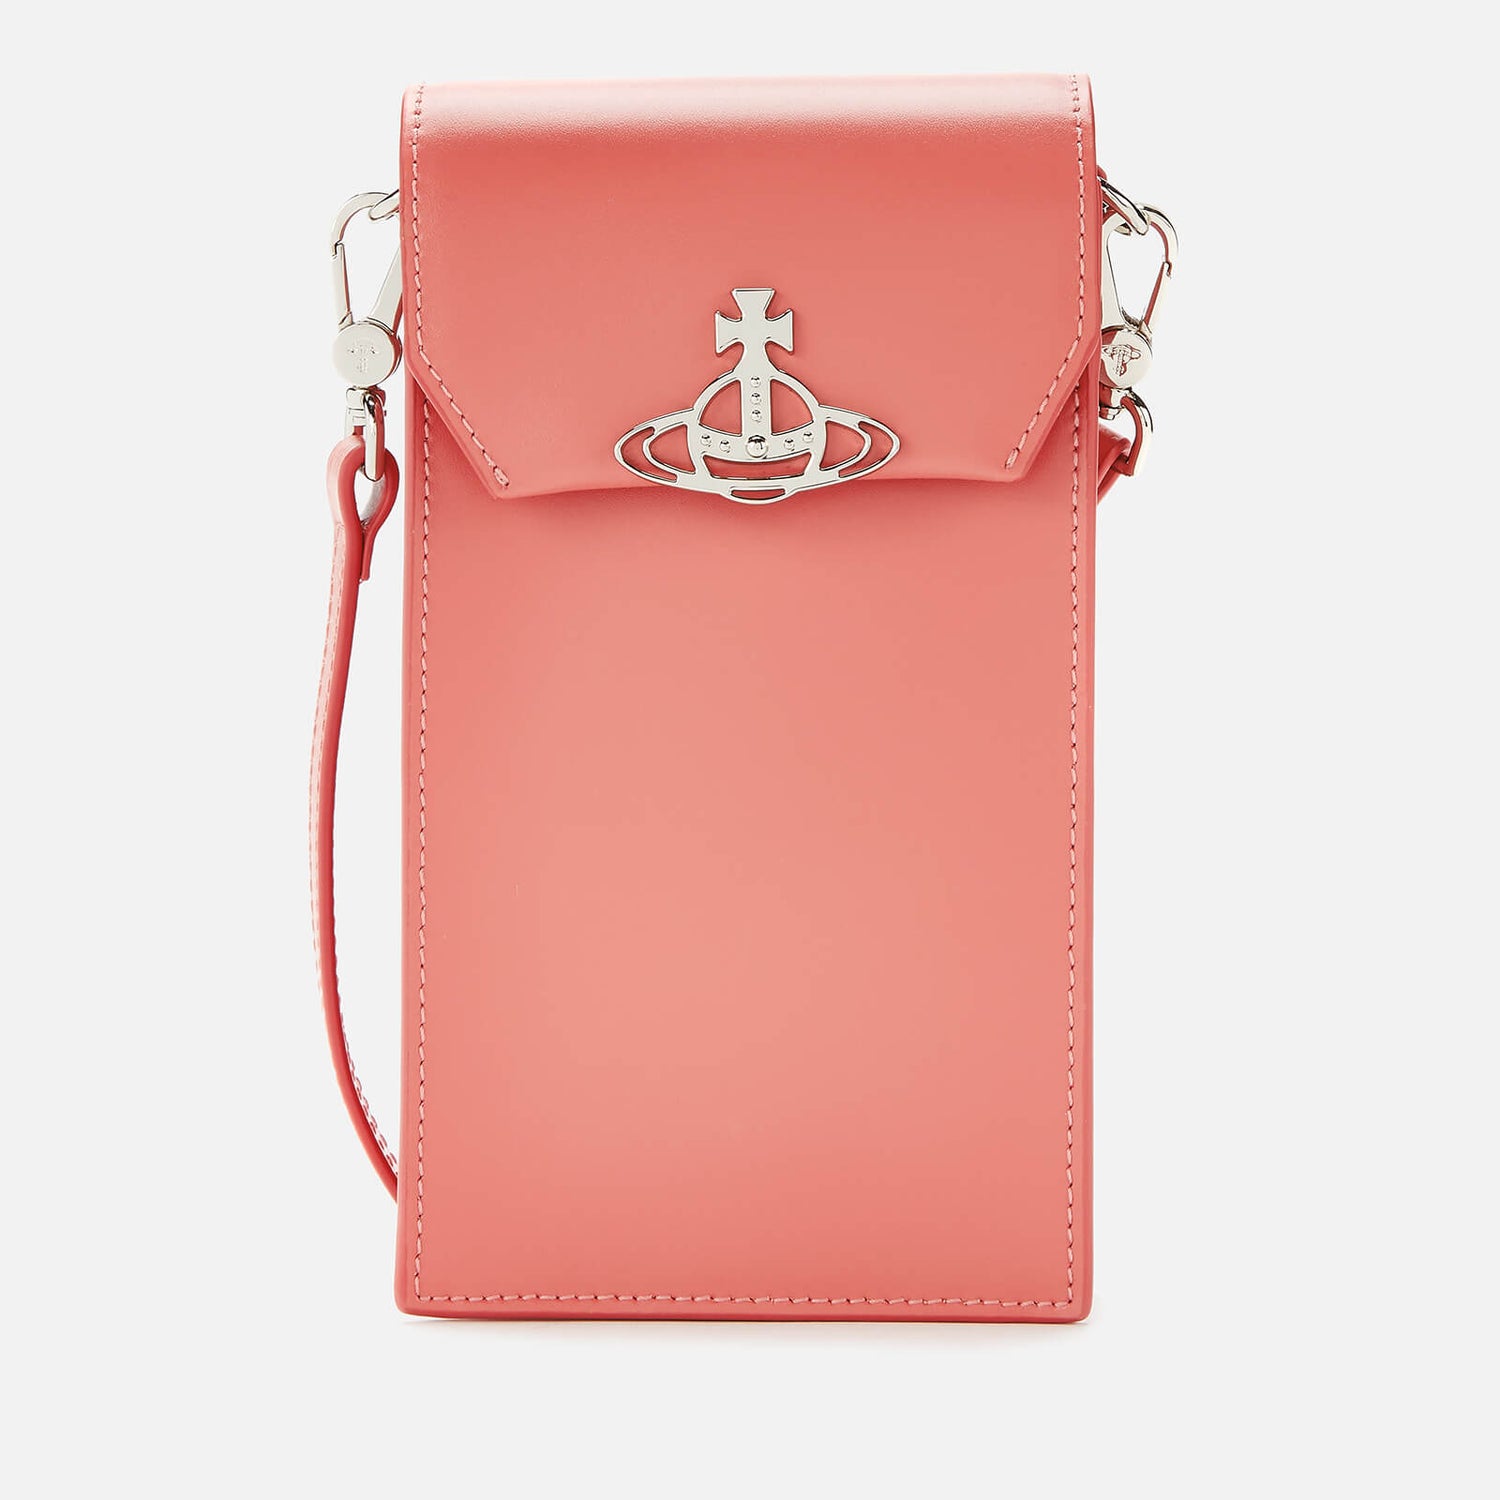 Vivienne Westwood Women's Jordan Phone Bag - Pink